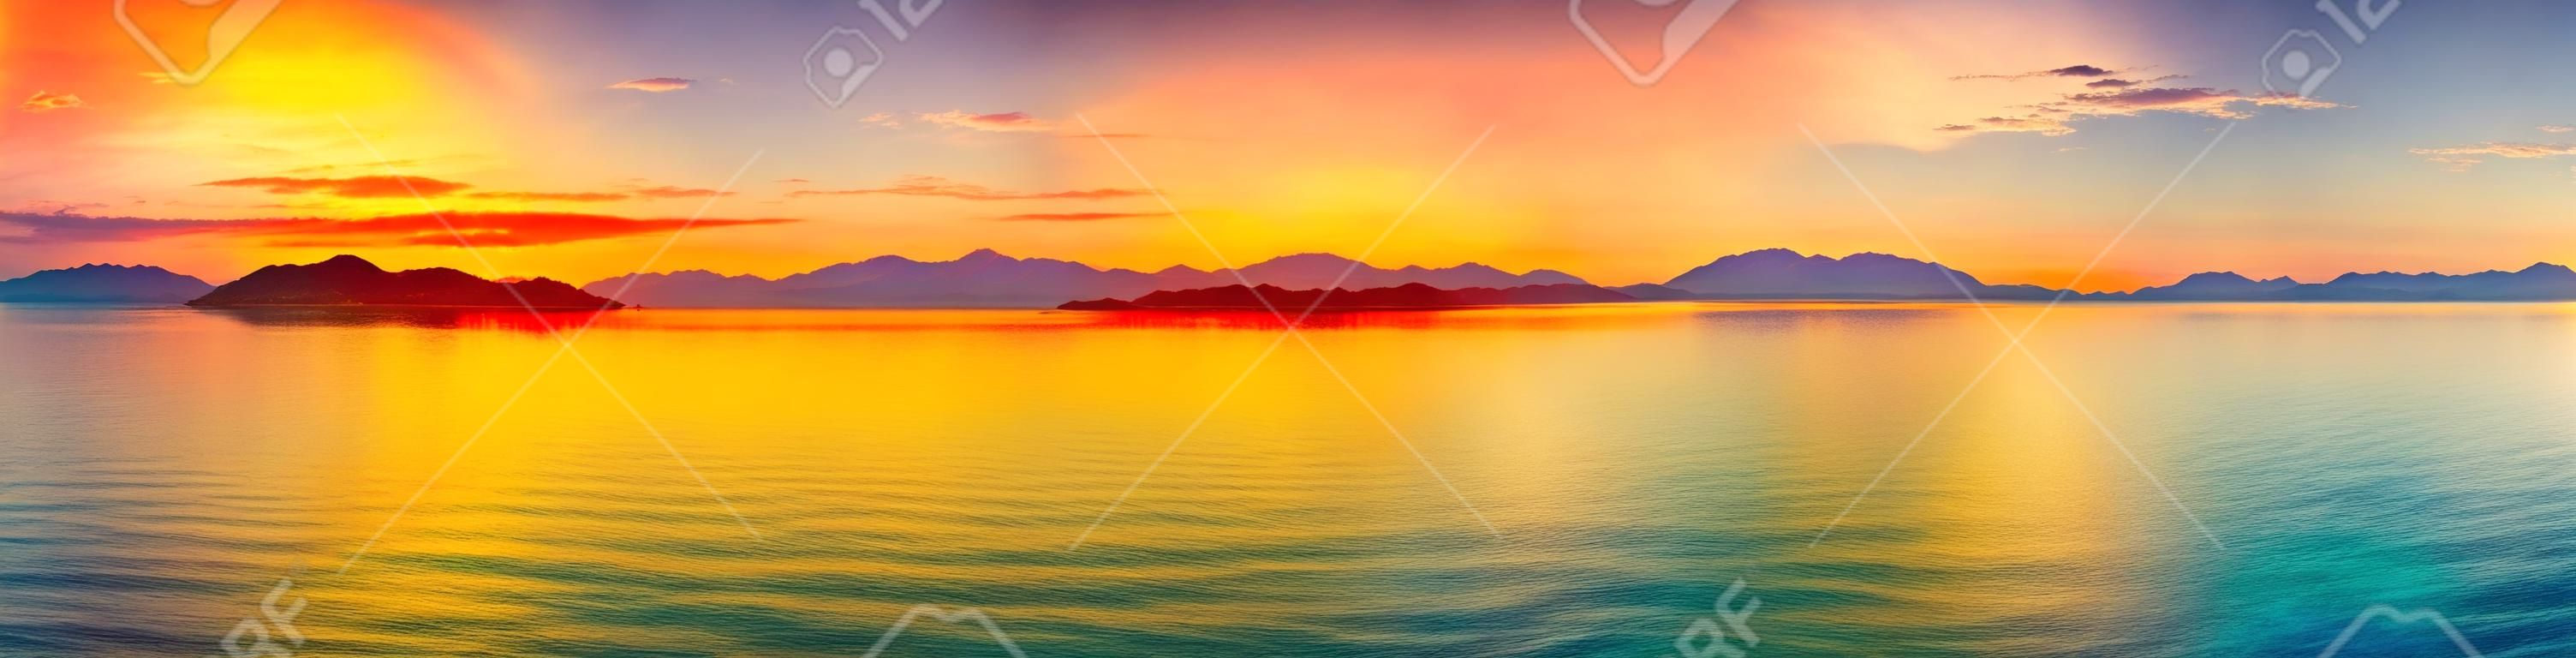 Восход солнца над морем. Панорама